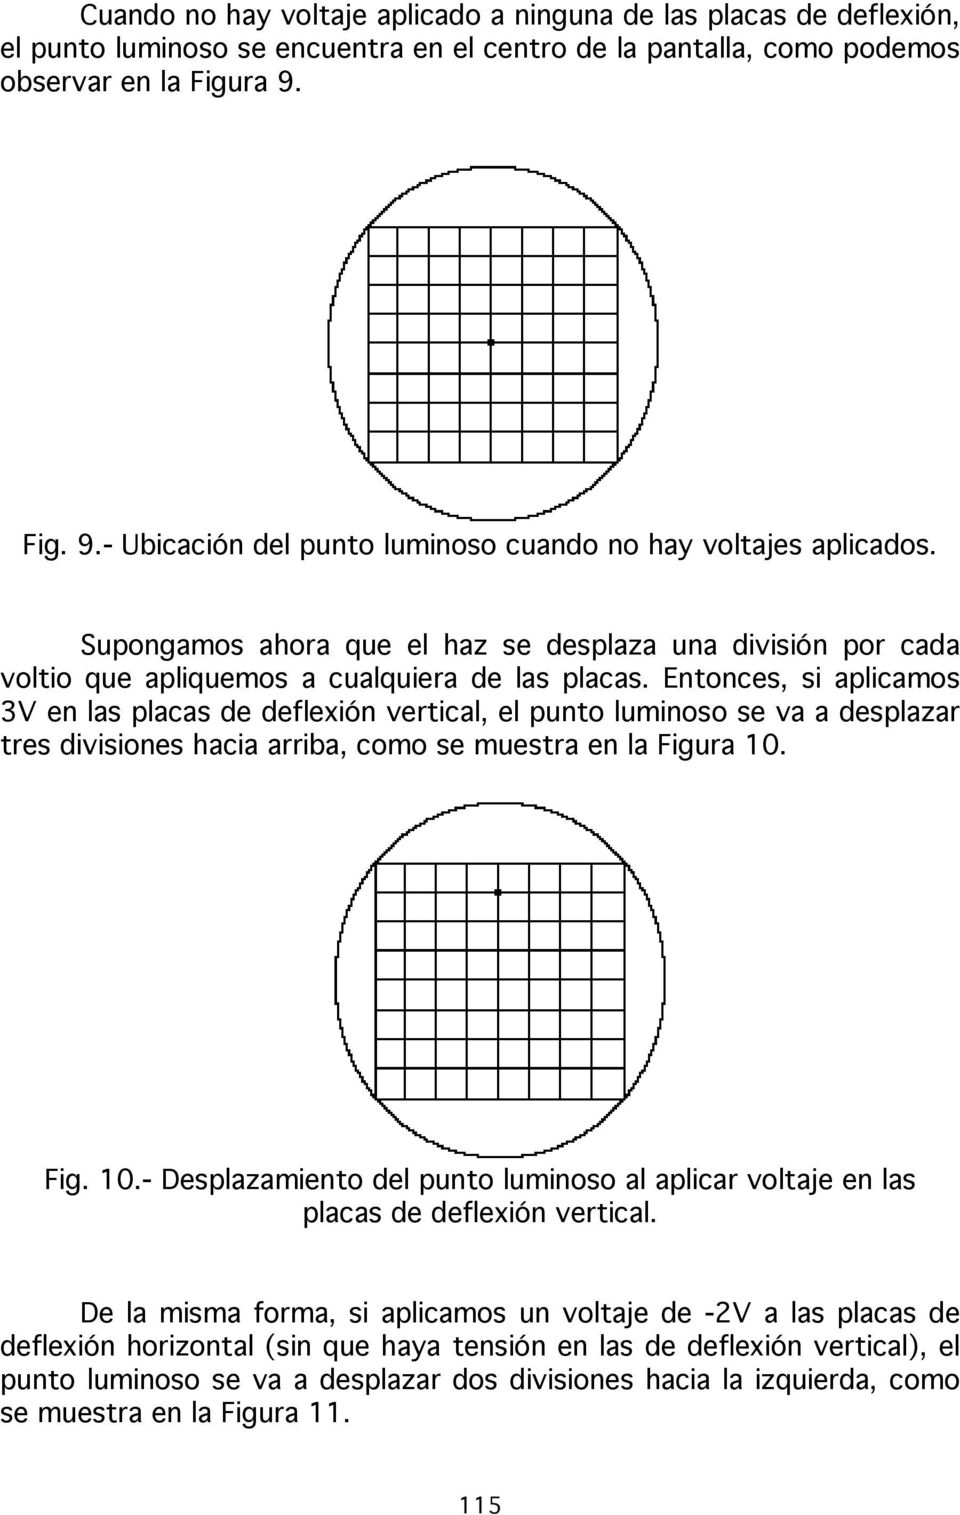 Entonces, si aplicamos 3V en las placas de deflexión vertical, el punto luminoso se va a desplazar tres divisiones hacia arriba, como se muestra en la Figura 10.